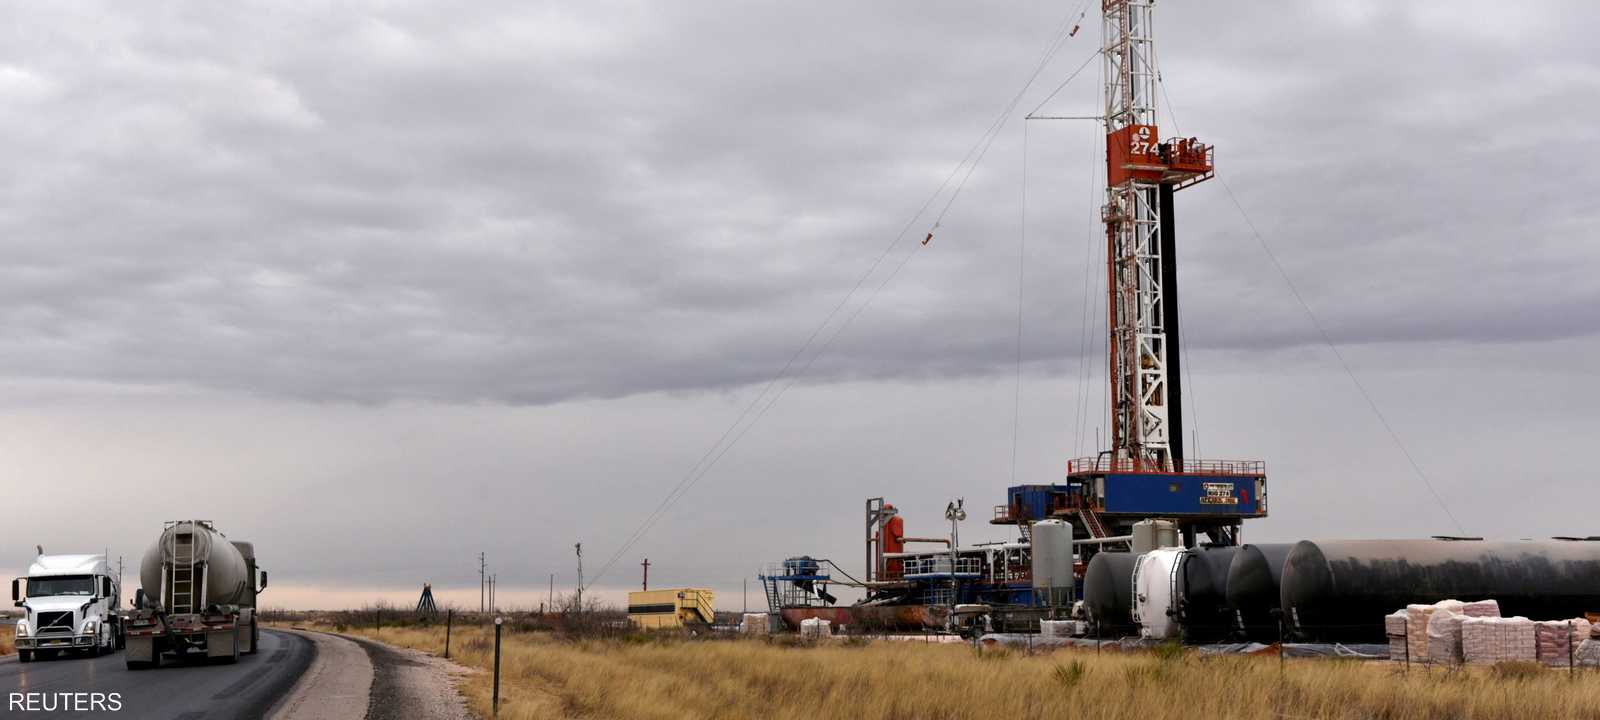 منصة حفر تعمل في منطقة إنتاج النفط في حوض بيرميان الأميركي